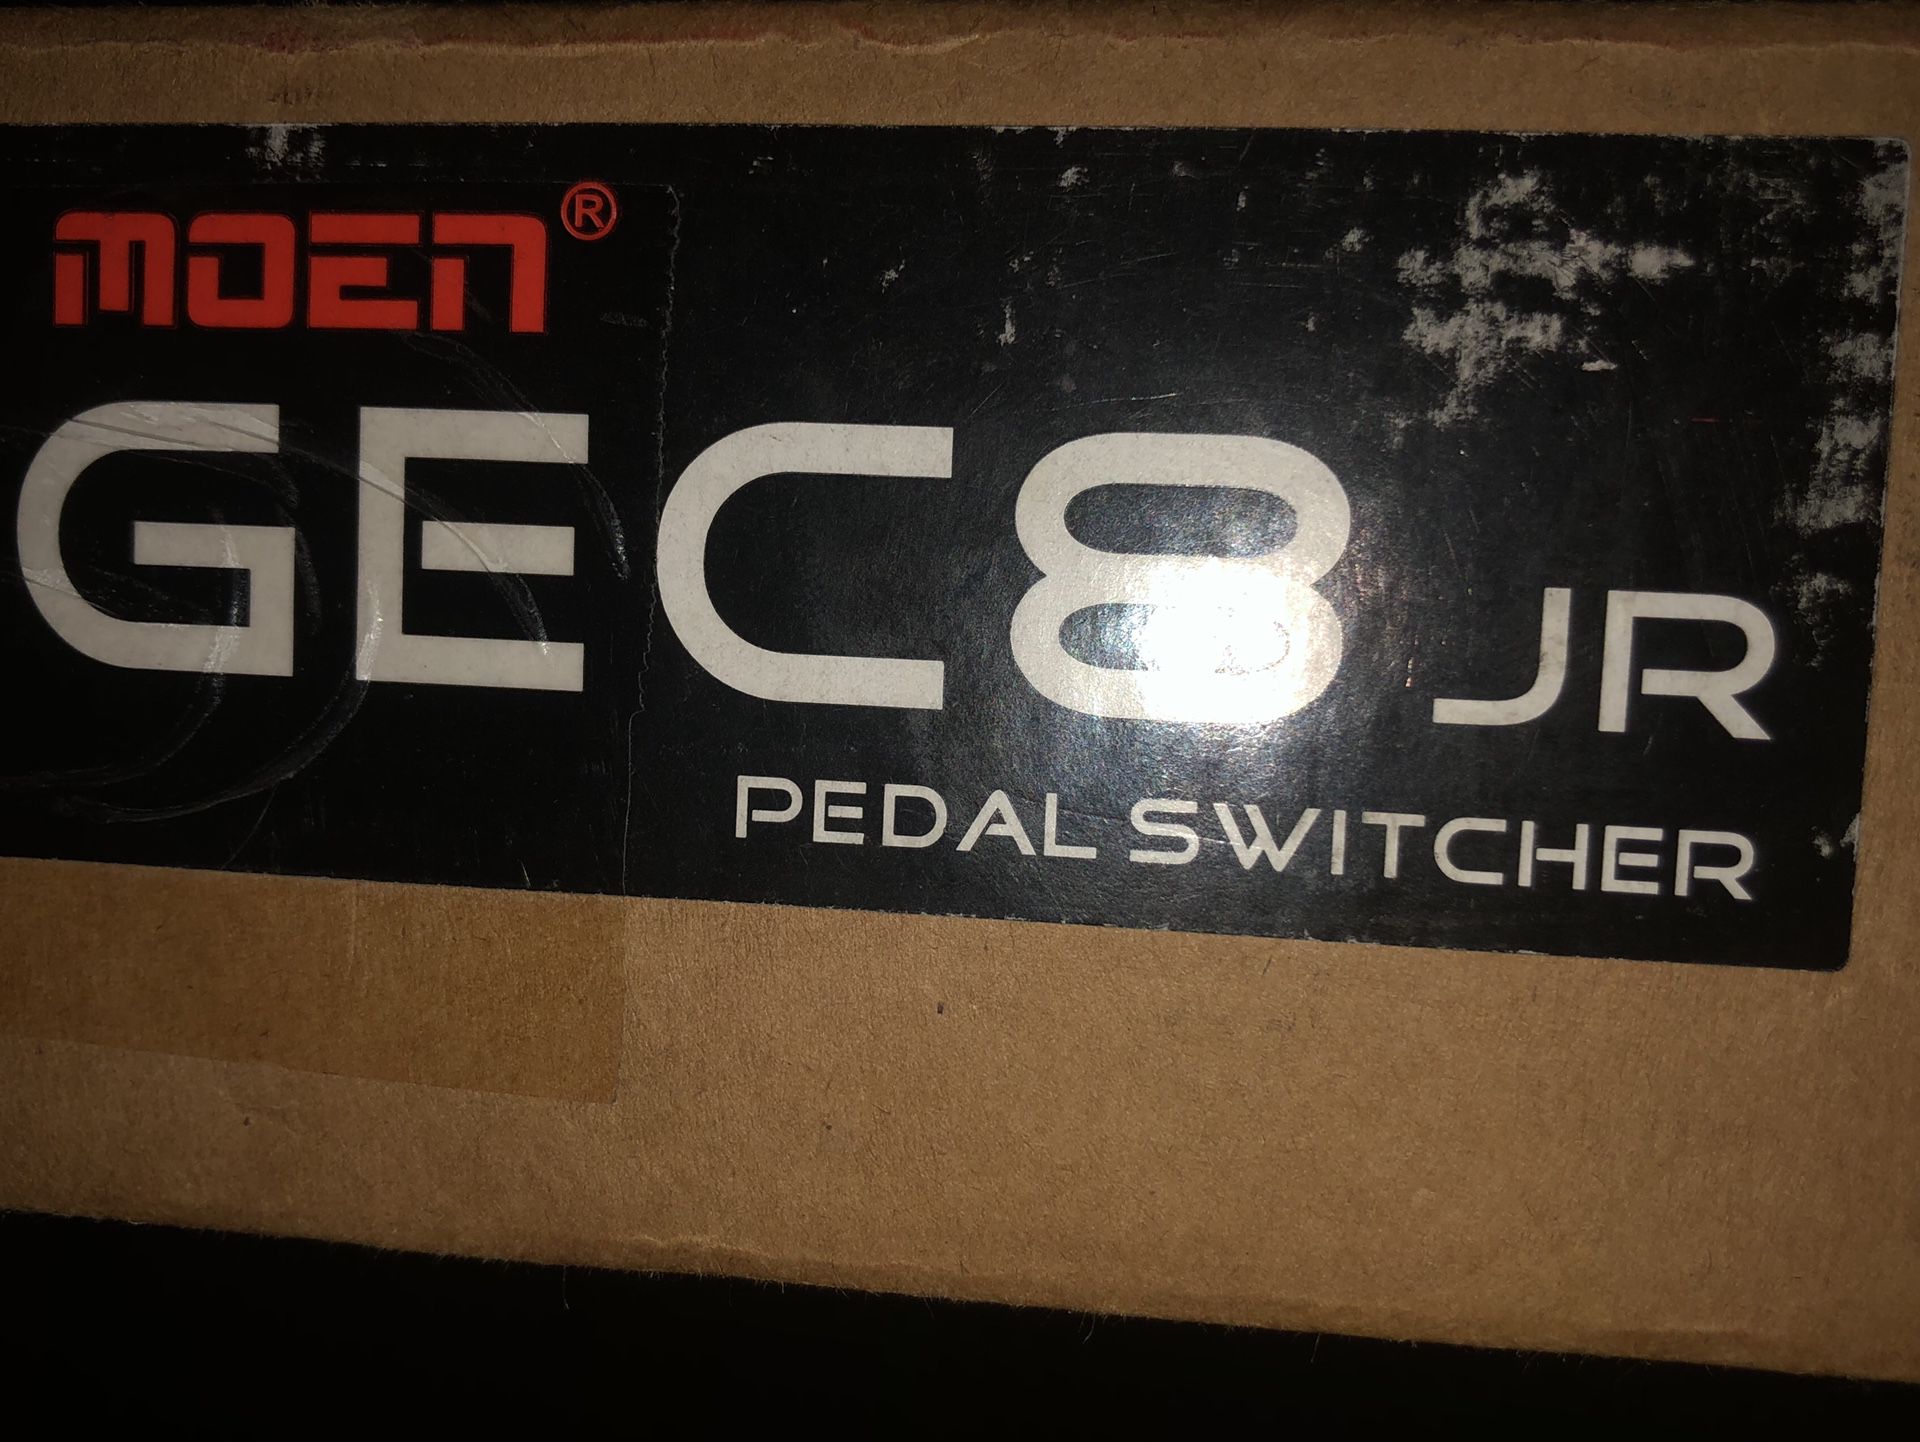 Moen GEC8 Jr Pedal Switcher